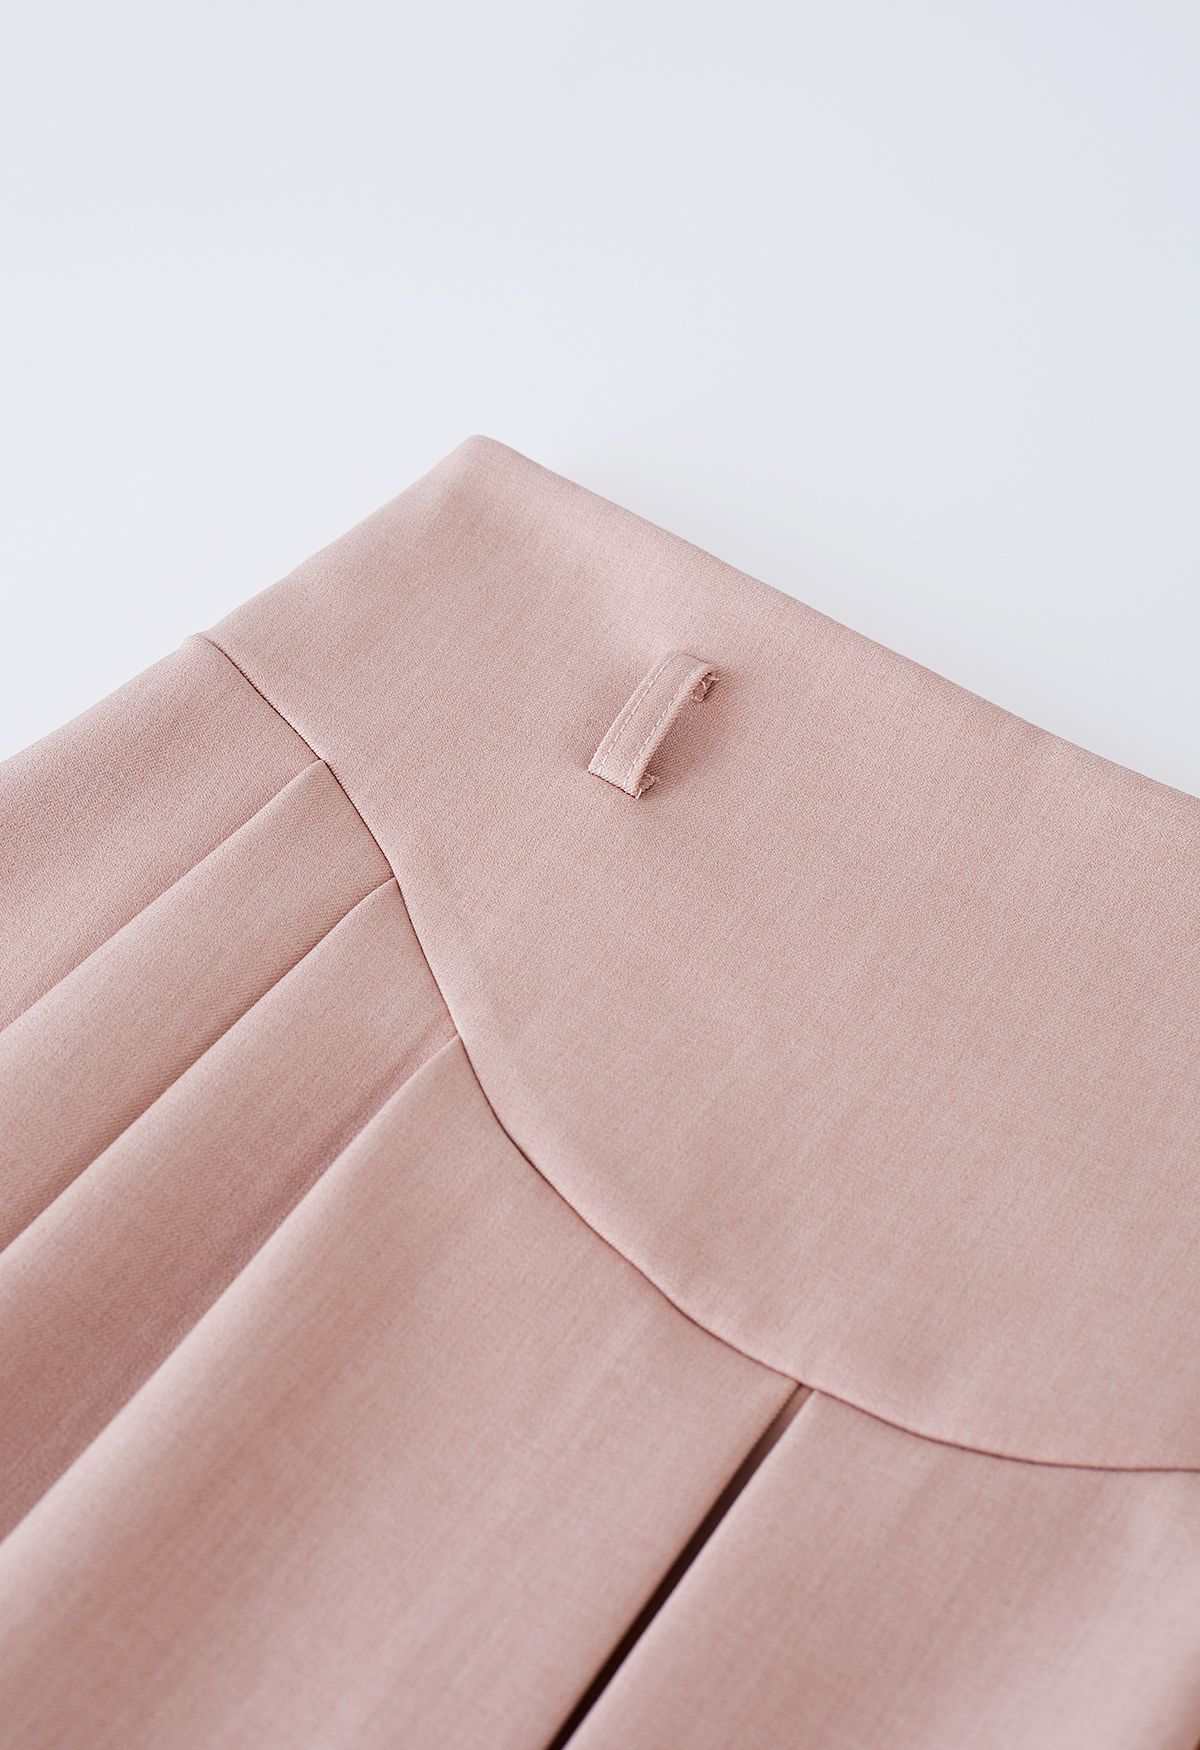 Minifalda plisada con cinturón y detalle de costuras en rosa